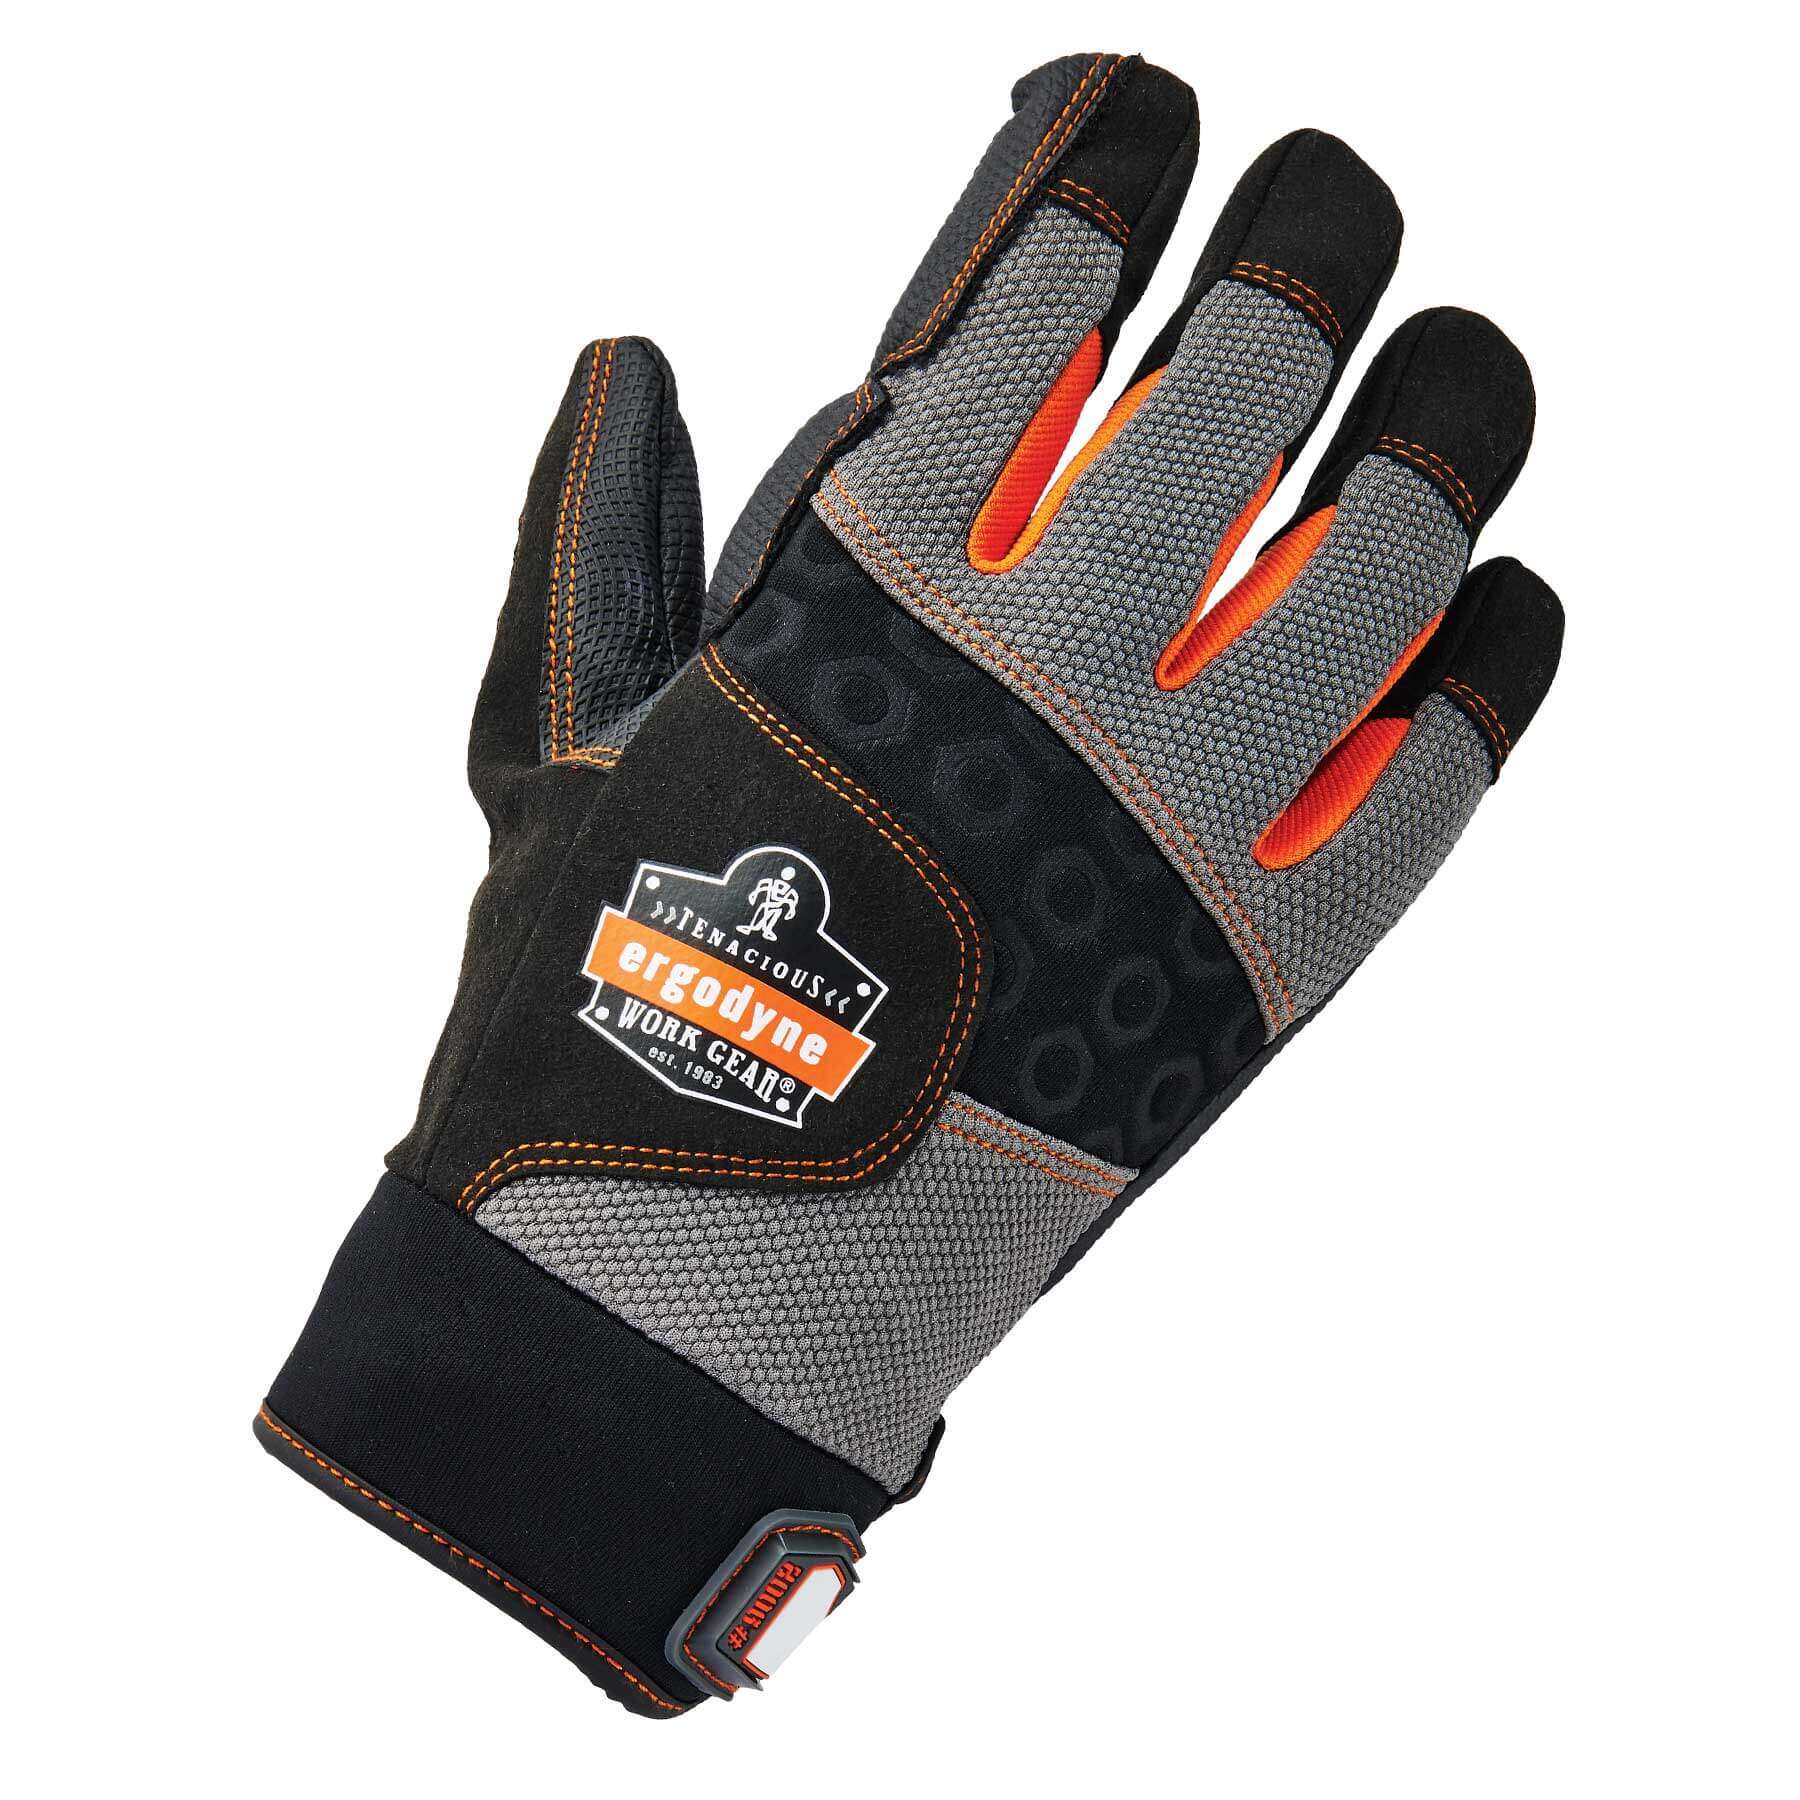 Certified Full-Finger Anti-Vibration Gloves